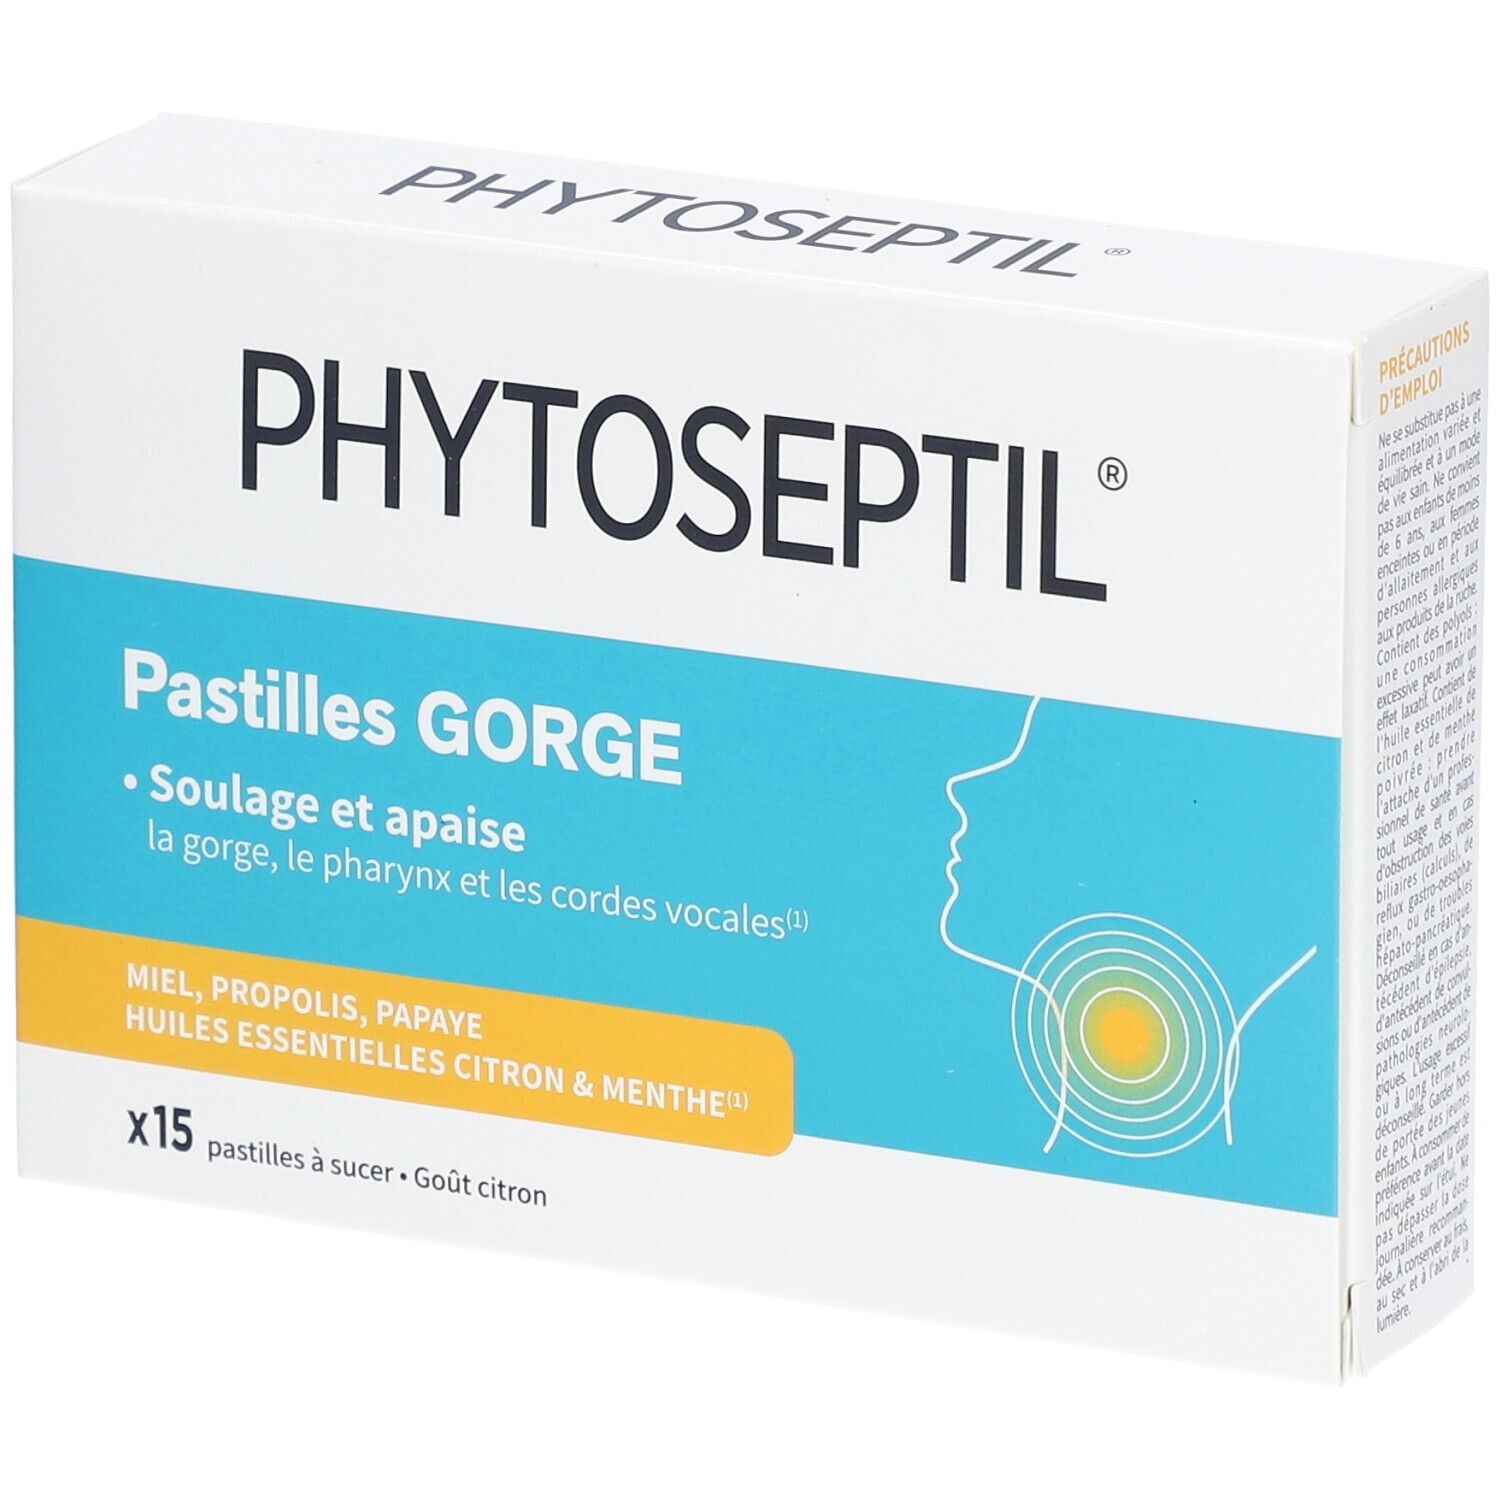 Phytoseptil® Pastilles gorge